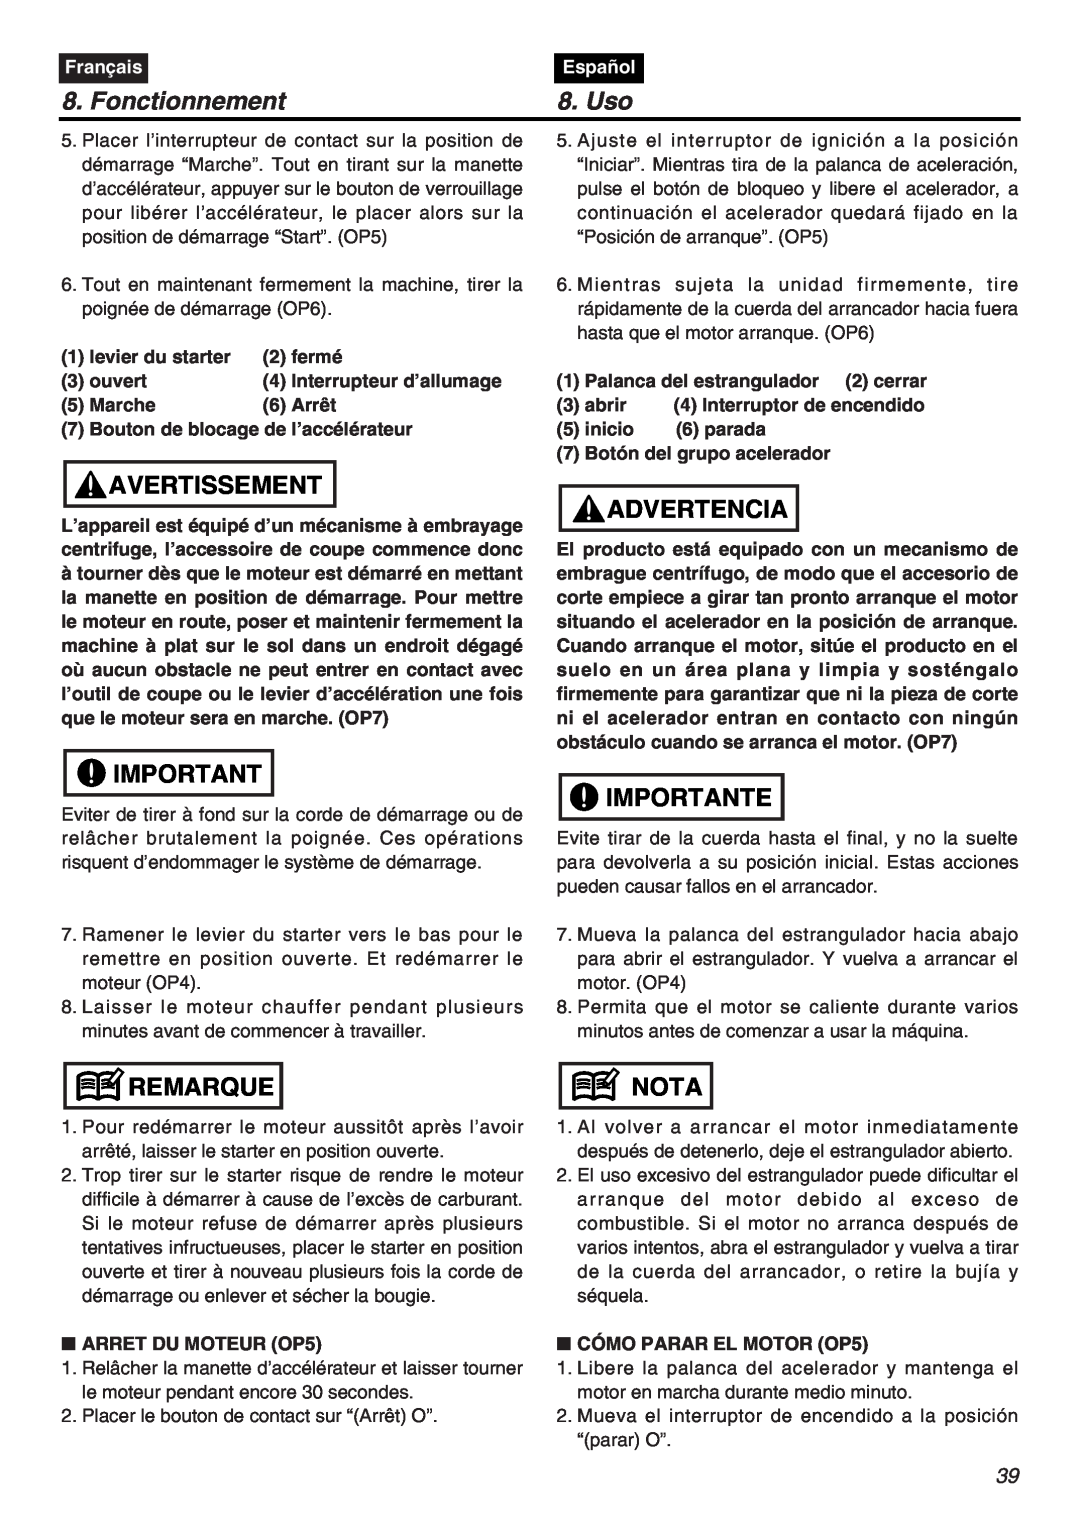 RedMax EXZ2401S-PH manual Fonctionnement, Uso, Avertissement, Advertencia, Importante, Remarque, Nota, Français, Español 